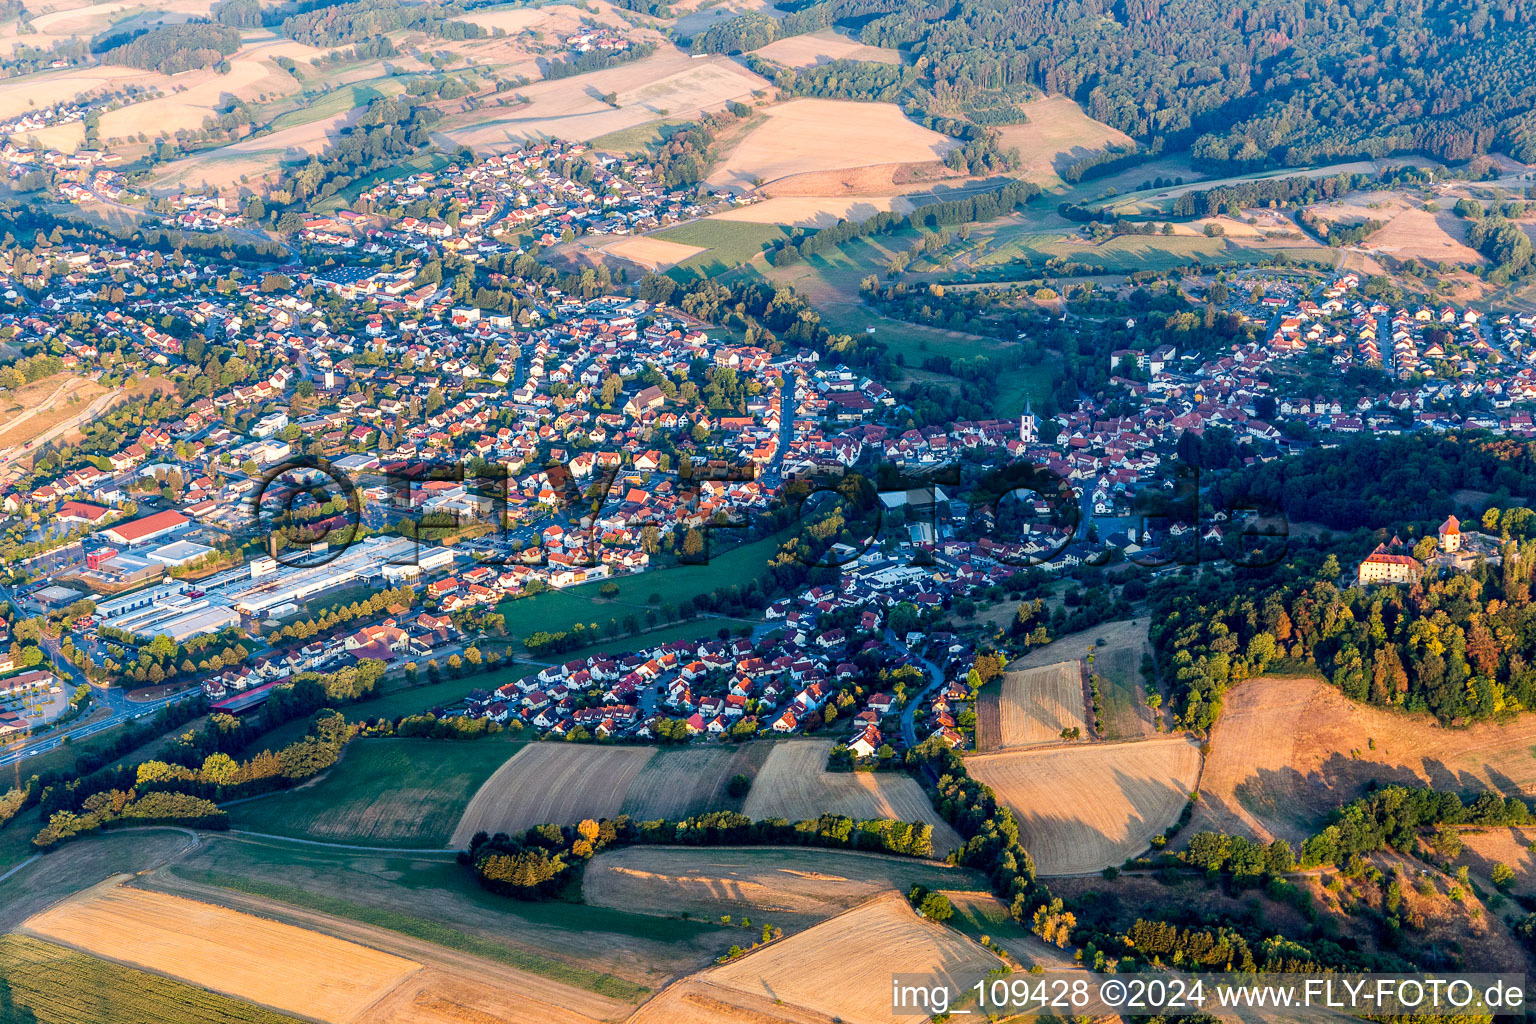 Luftbild von Ortsansicht der Straßen und Häuser der Wohngebiete in der von Bergen umgebenen Tallandschaft in Reichelsheim (Odenwald) im Bundesland Hessen, Deutschland